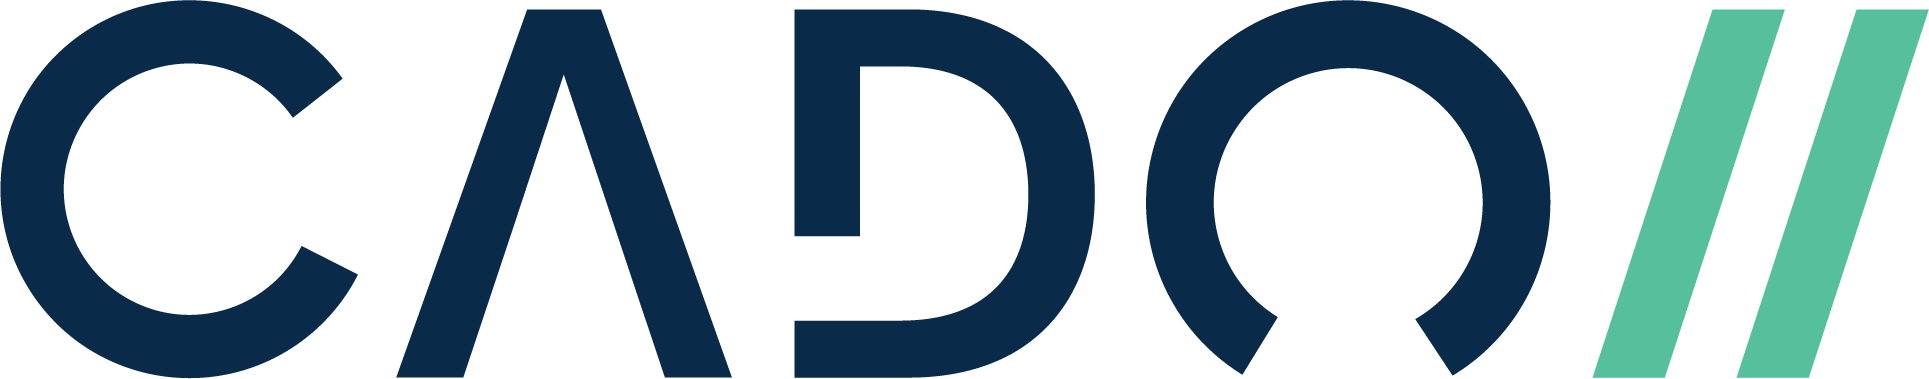 Cado-Logo-Color (1)